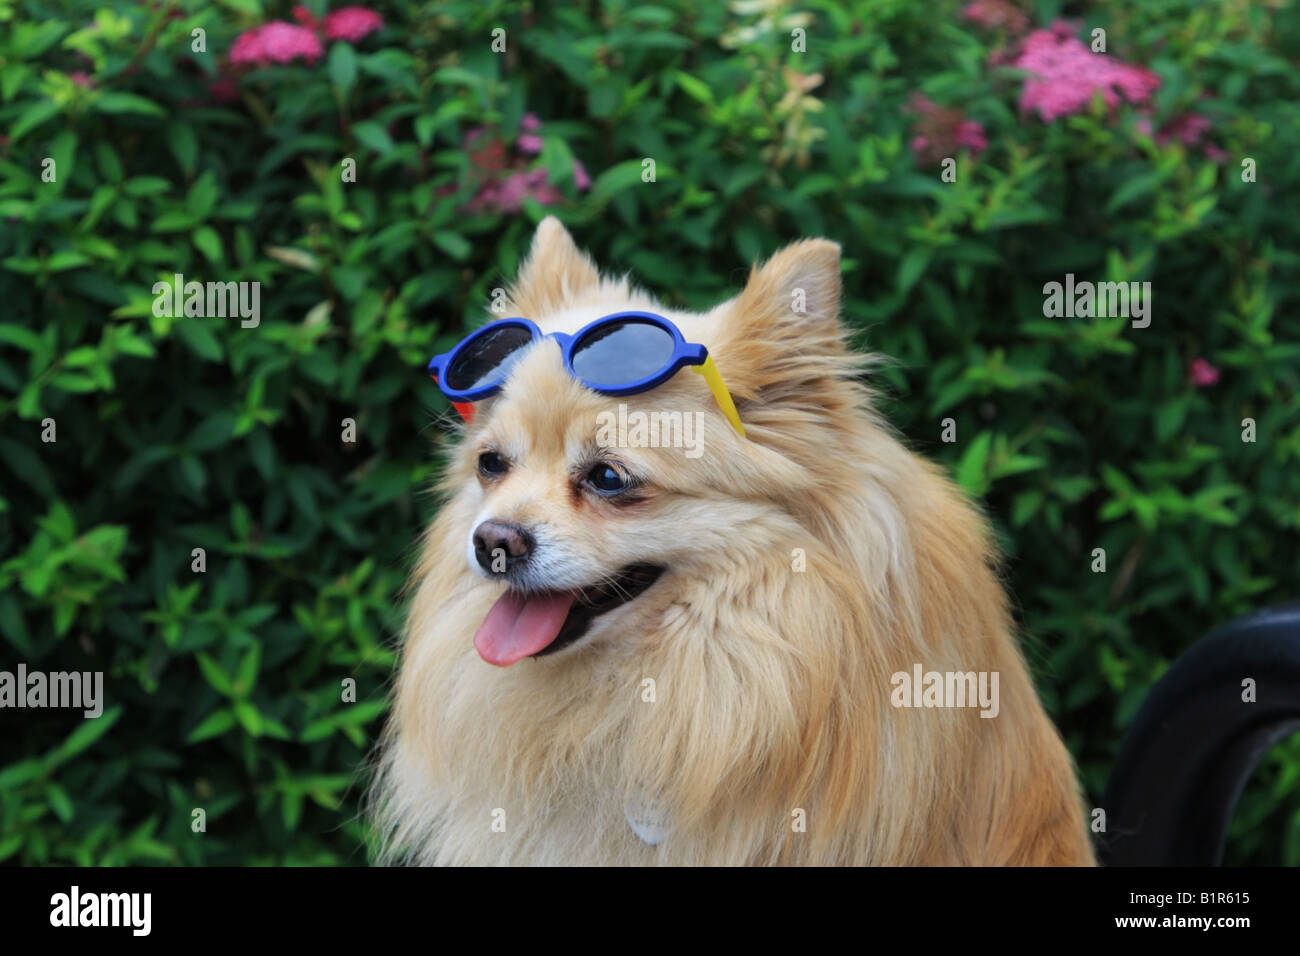 Chien Pomeranian wearing sunglasses Banque D'Images